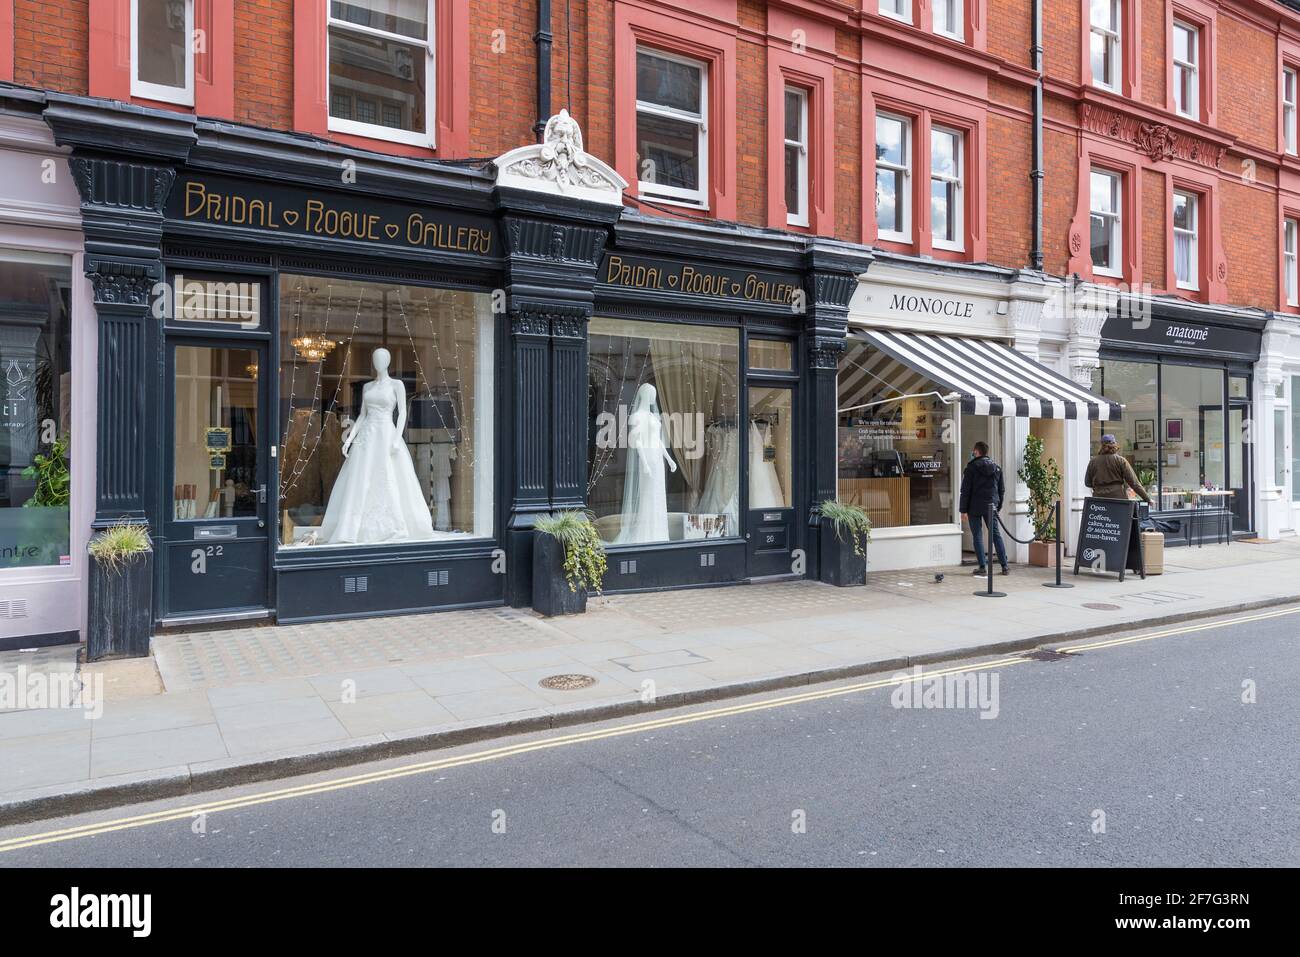 The Bridal Rogue Gallery Wedding Dress Shop und Monocle Cafe. Zwei Personen stehen auf der Straße vor dem Café. Chiltern Street, London, England, Großbritannien Stockfoto